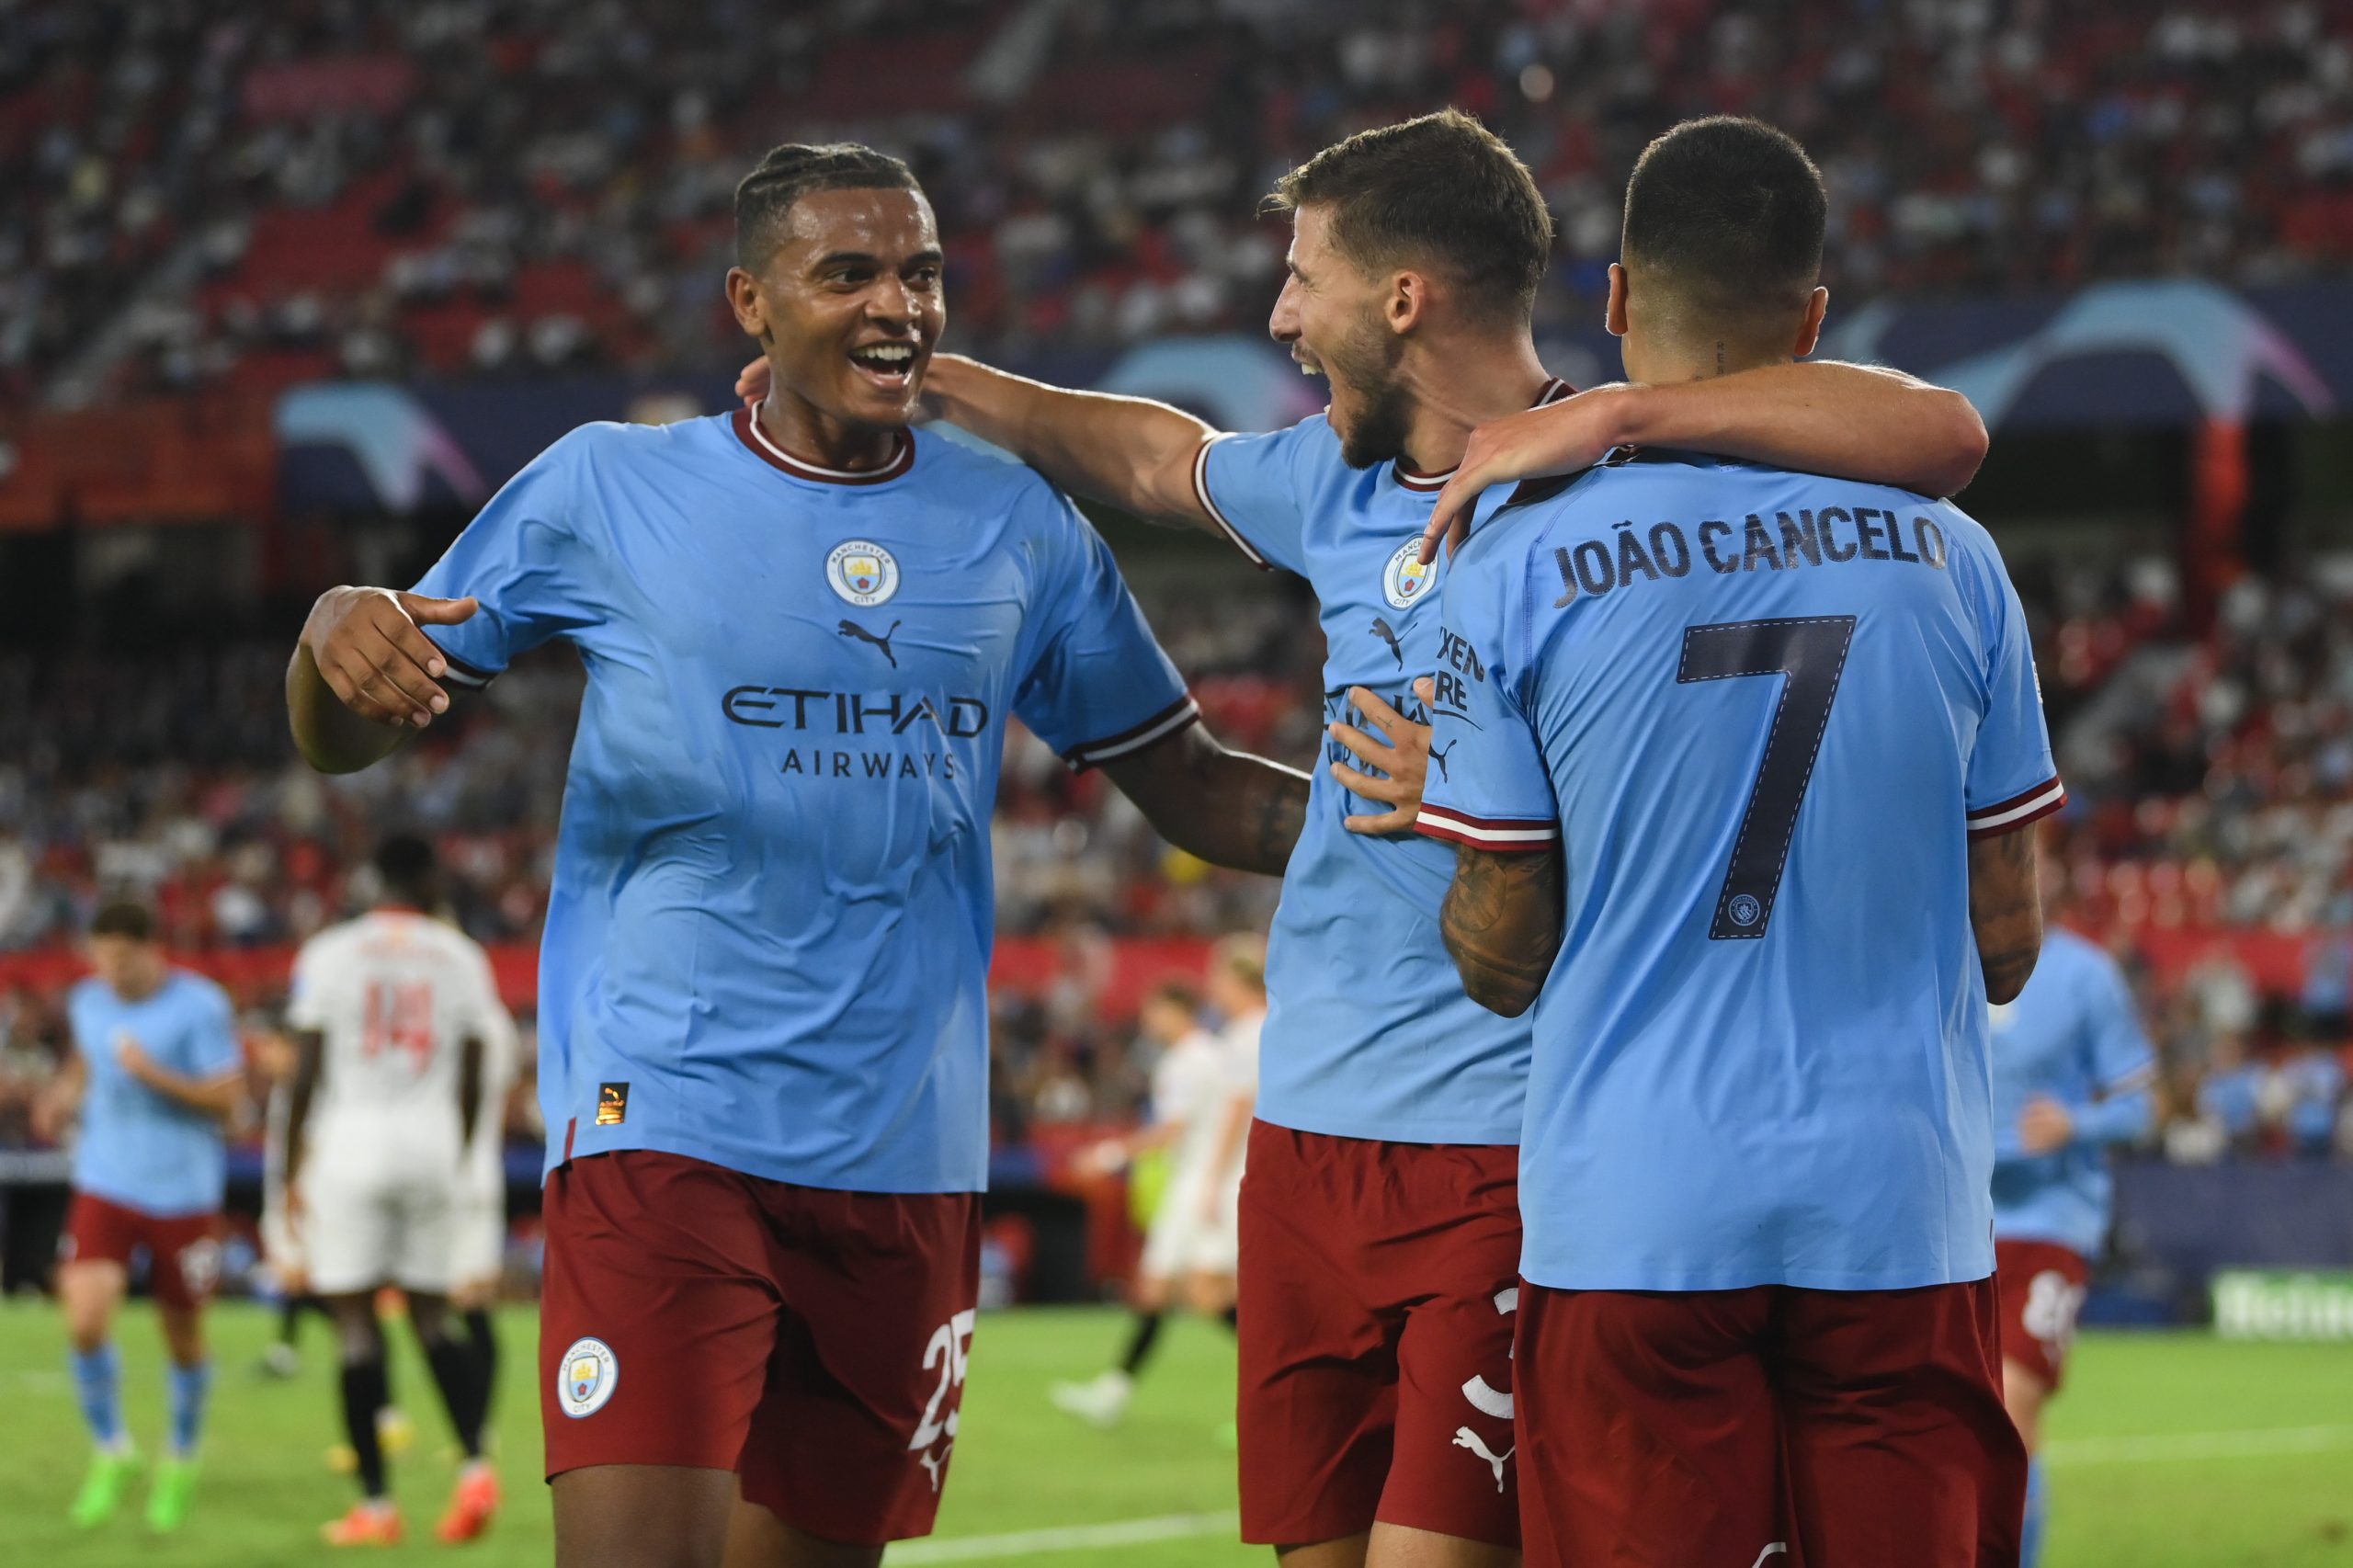 Manchester City x Sevilla – Prognósticos e Antevisão do Jogo